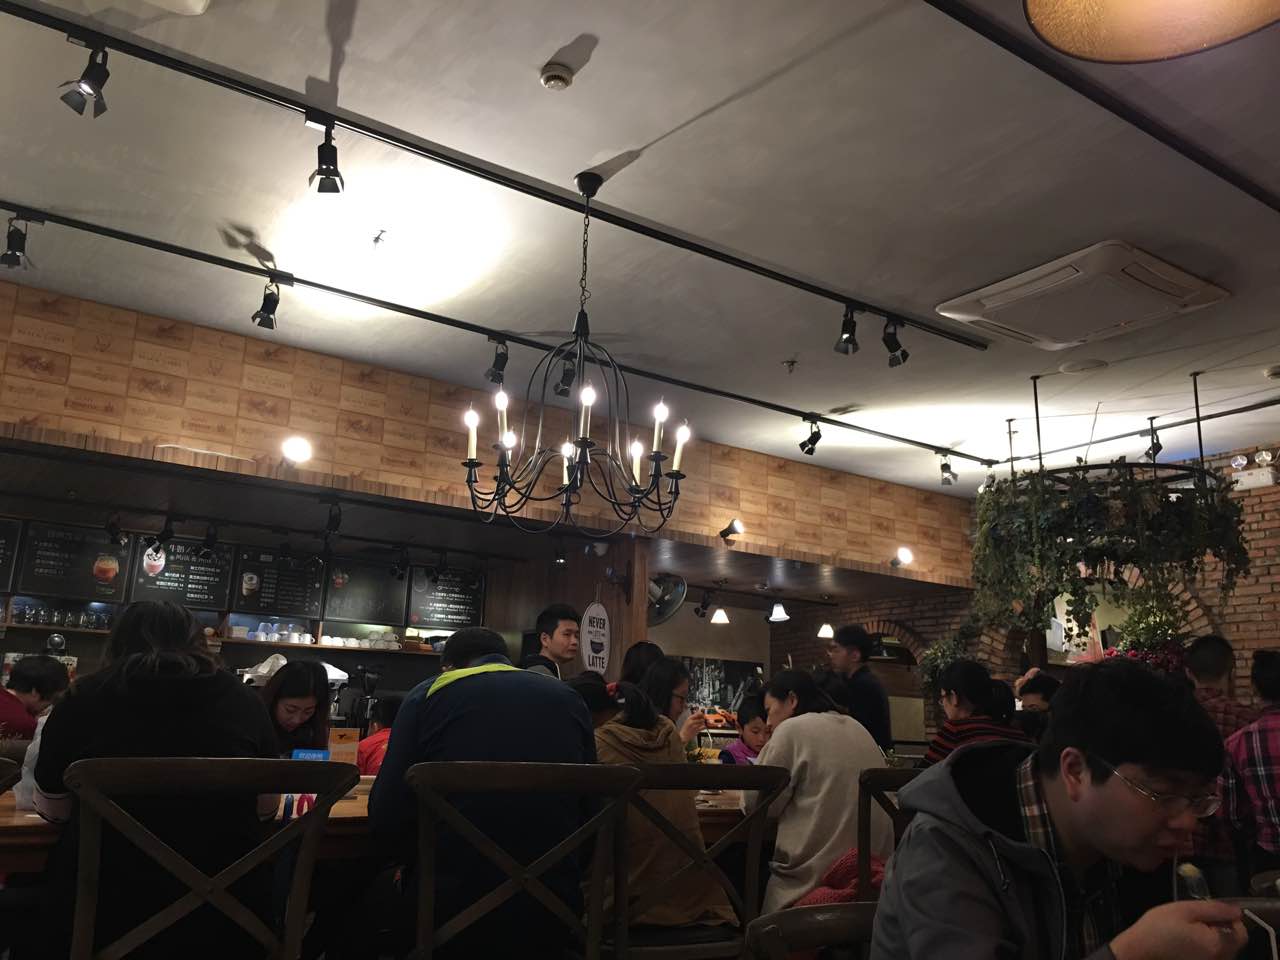 上海玛格萝妮餐厅由来图片